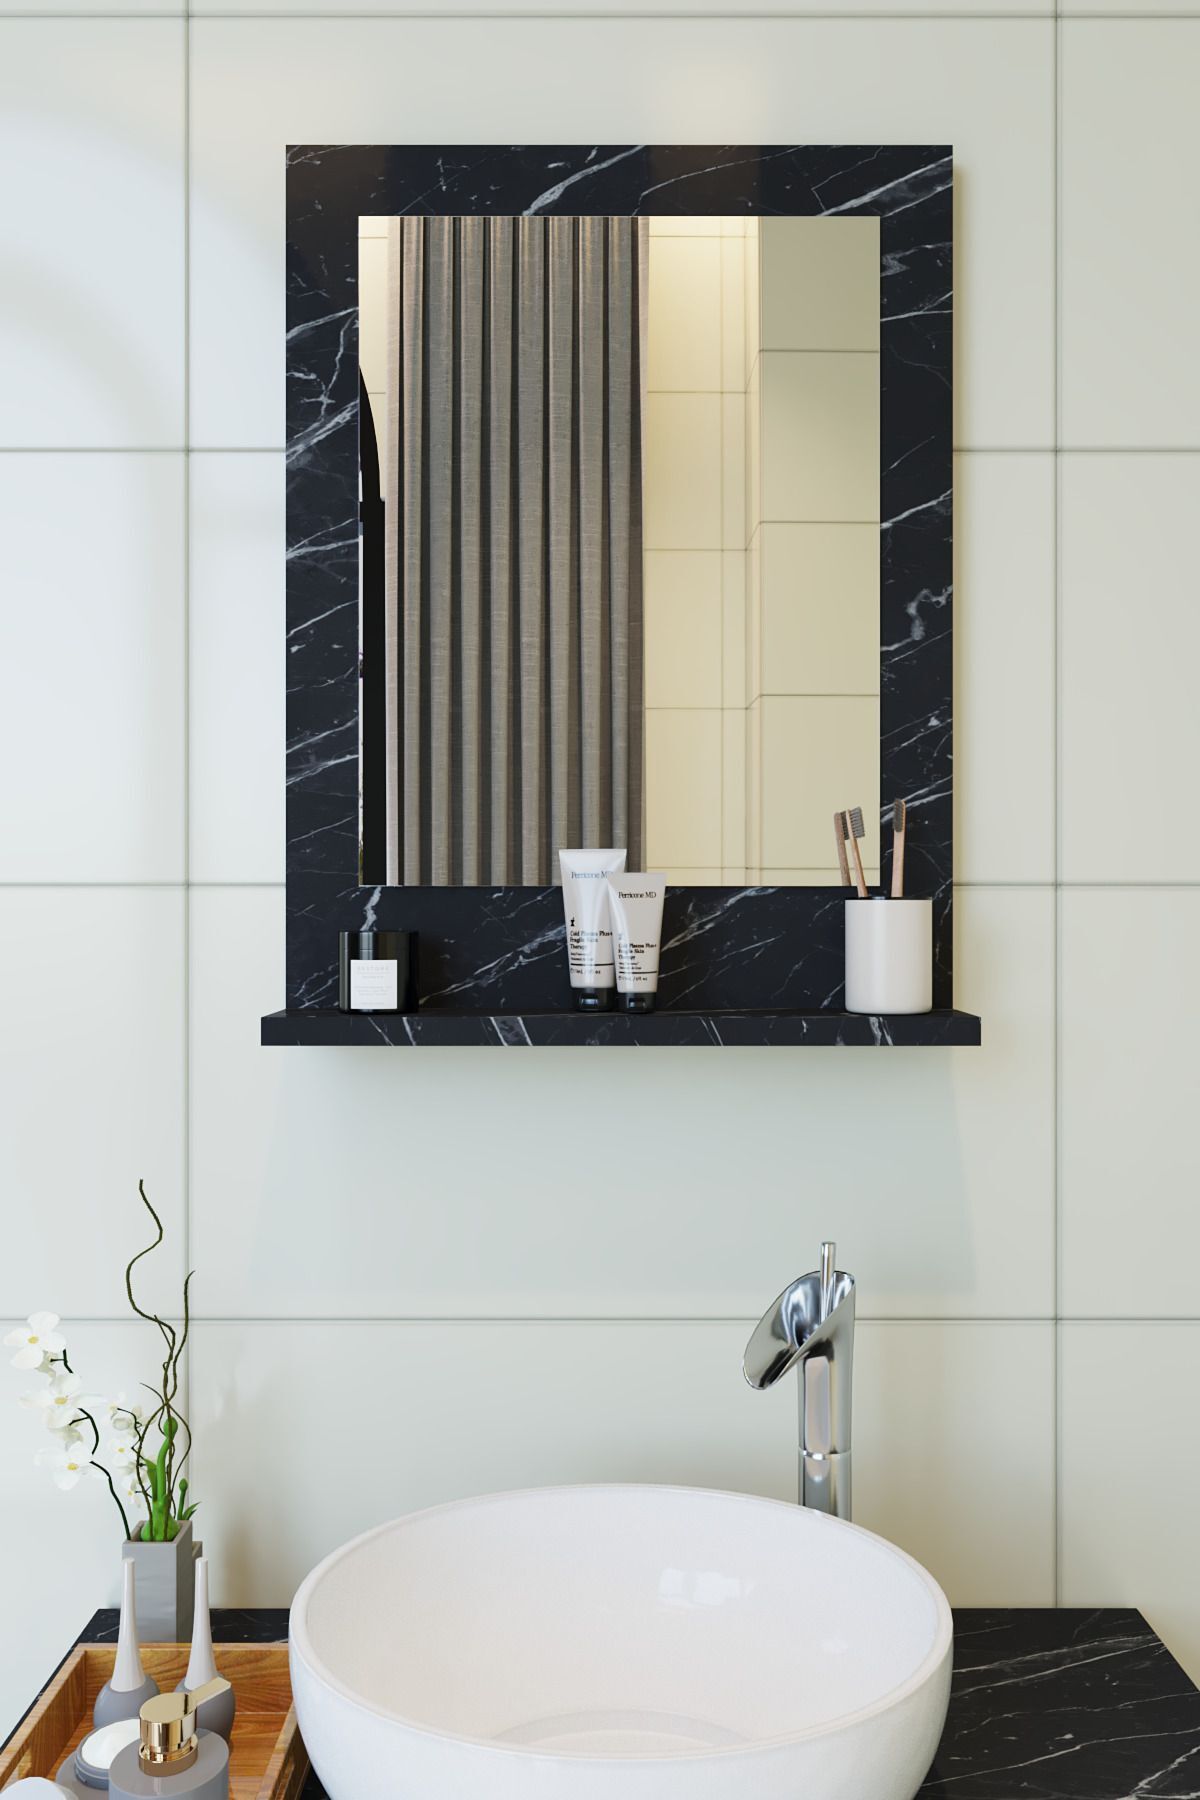 makbulce Safir Banyo Aynası Dresuar 45x60 Mermer Raflı Banyo Aynası